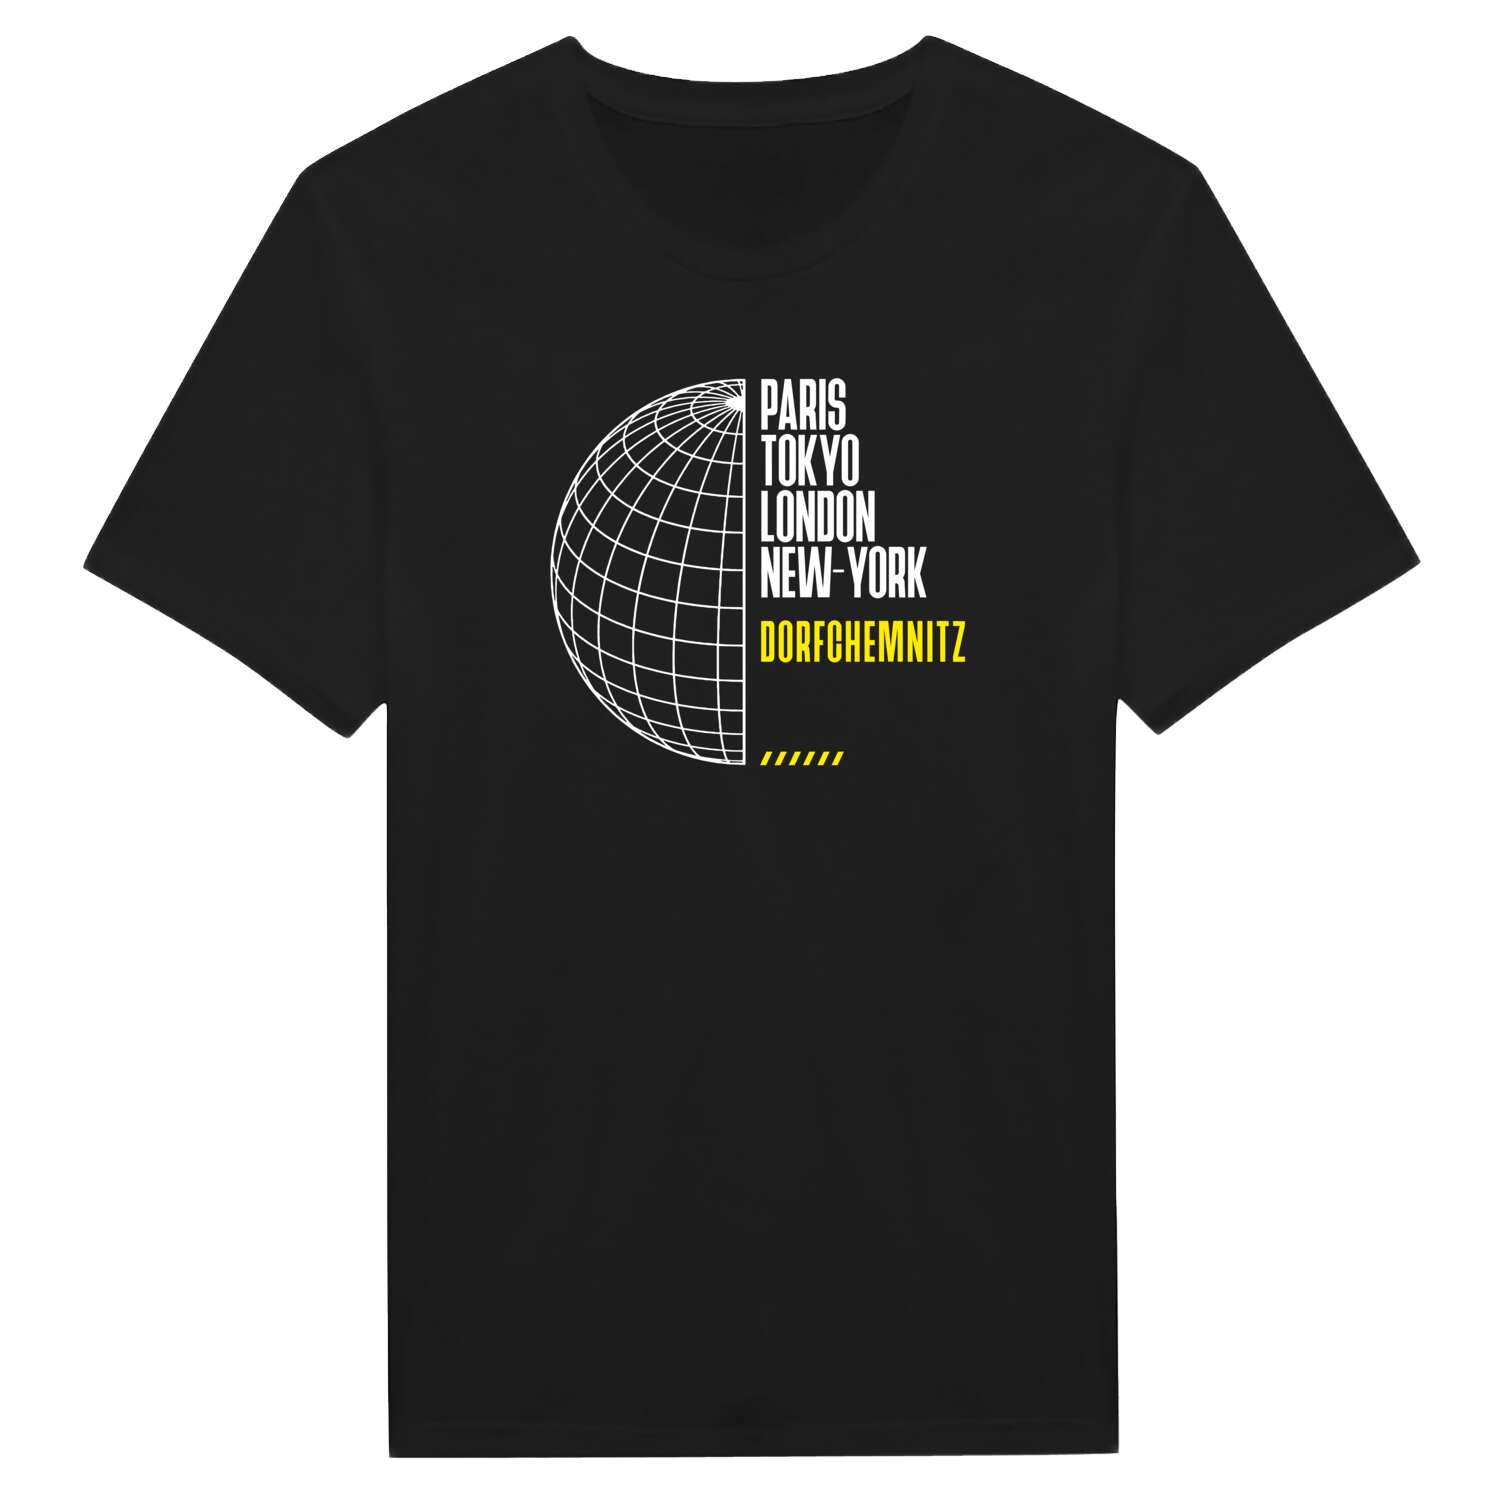 Dorfchemnitz T-Shirt »Paris Tokyo London«